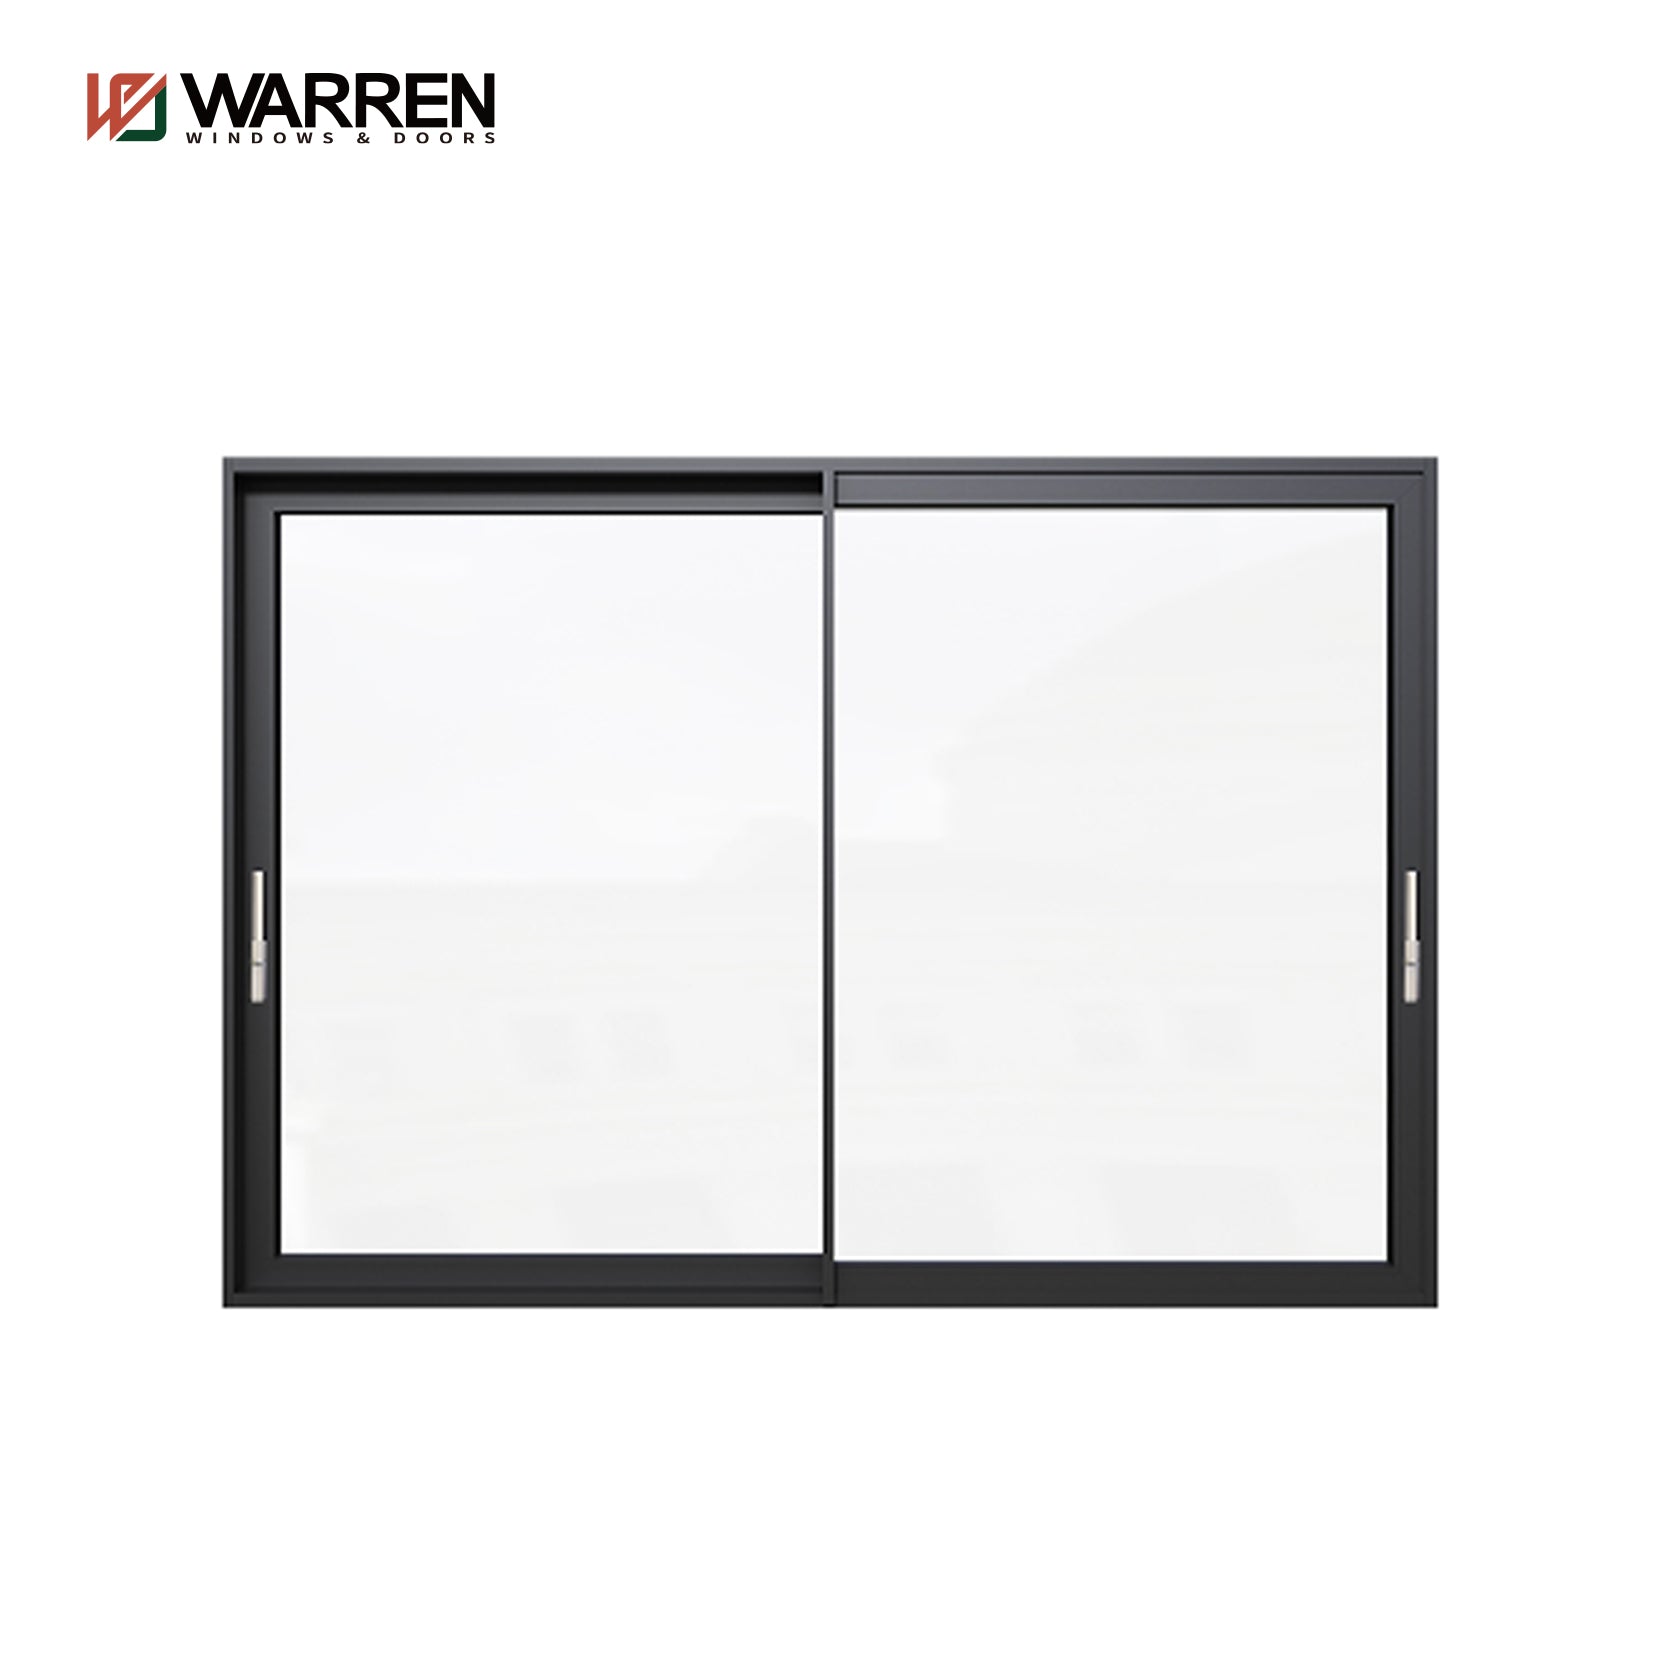 Warren New Promotion  Hot Style Double Pane Sliding Glass Doors Lift Sliding Door Aluminum Door